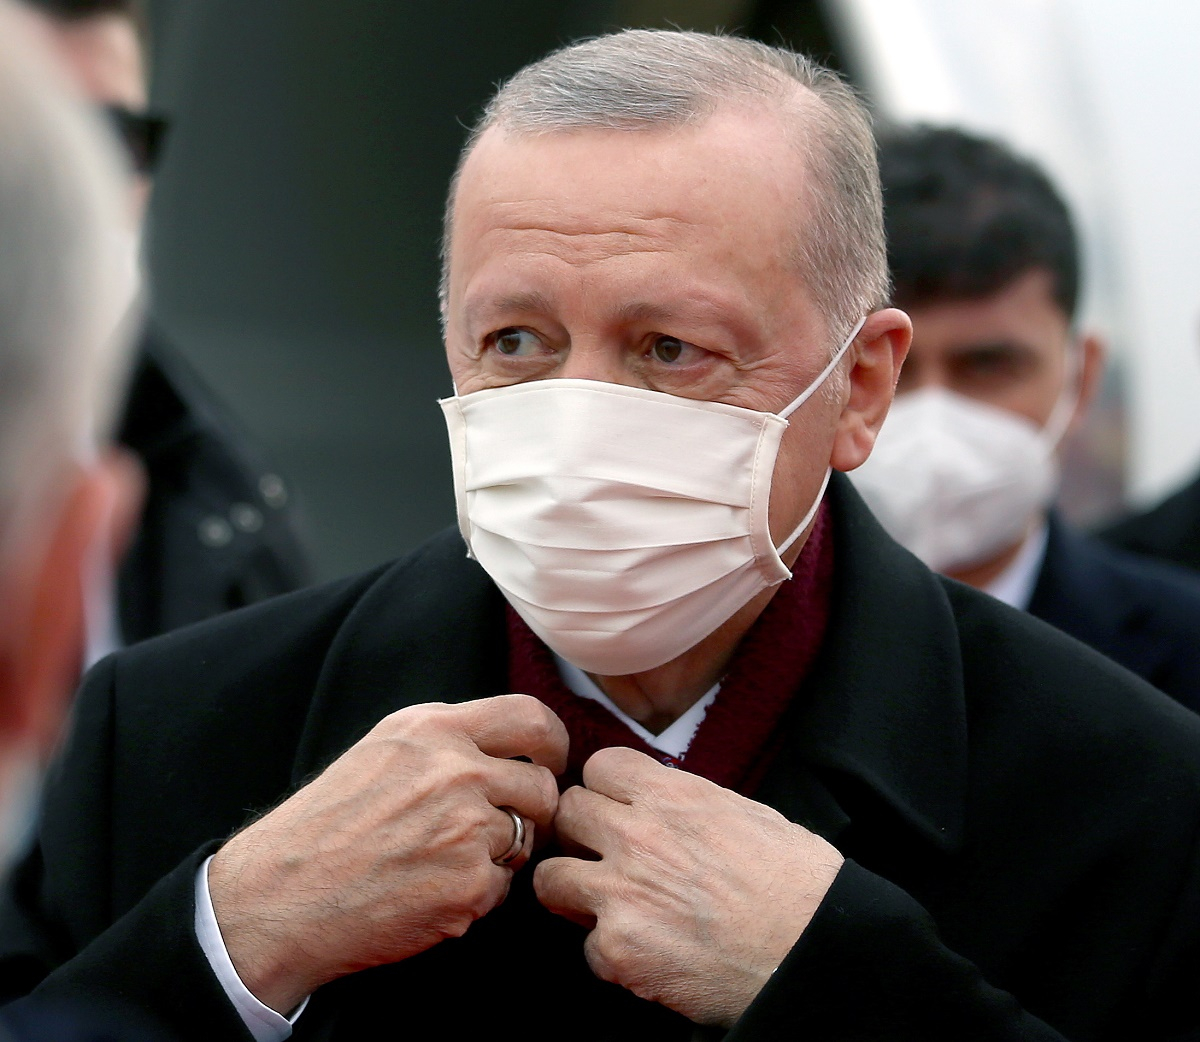 Τουρκία: Αύξησαν τα ποσοστά τους το κυβερνών ΑΚΡ και το αντιπολιτευόμενο CHP κατά 2,4 και 1,7 μονάδες αντίστοιχα